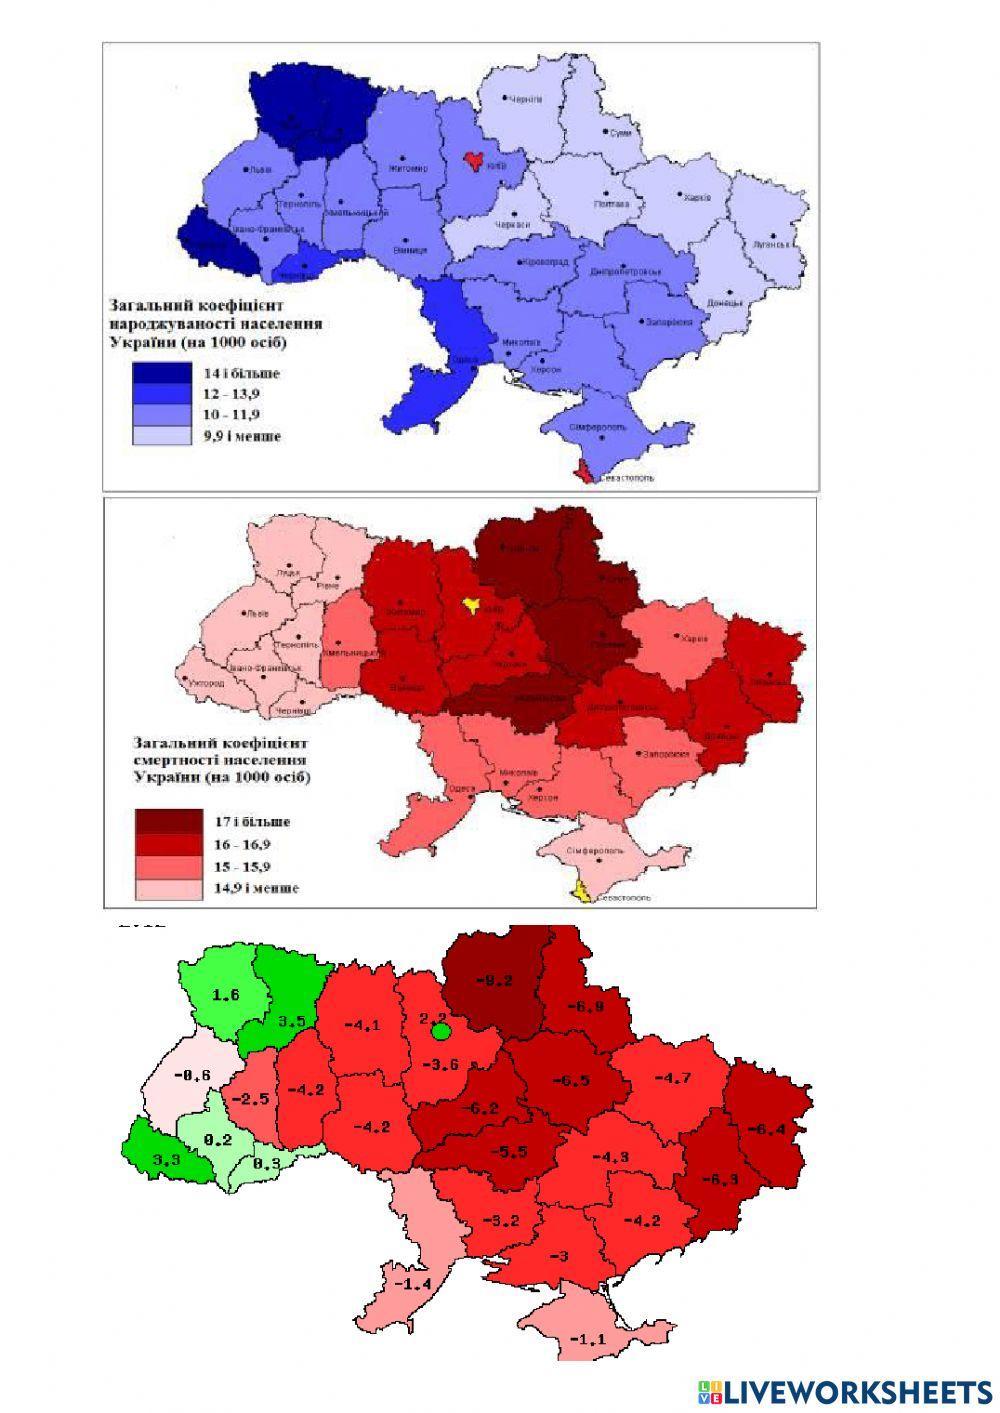 Аналіз картосхем народжуваності, смертності природного приросту, густоти населення, Урбанізації в Україні